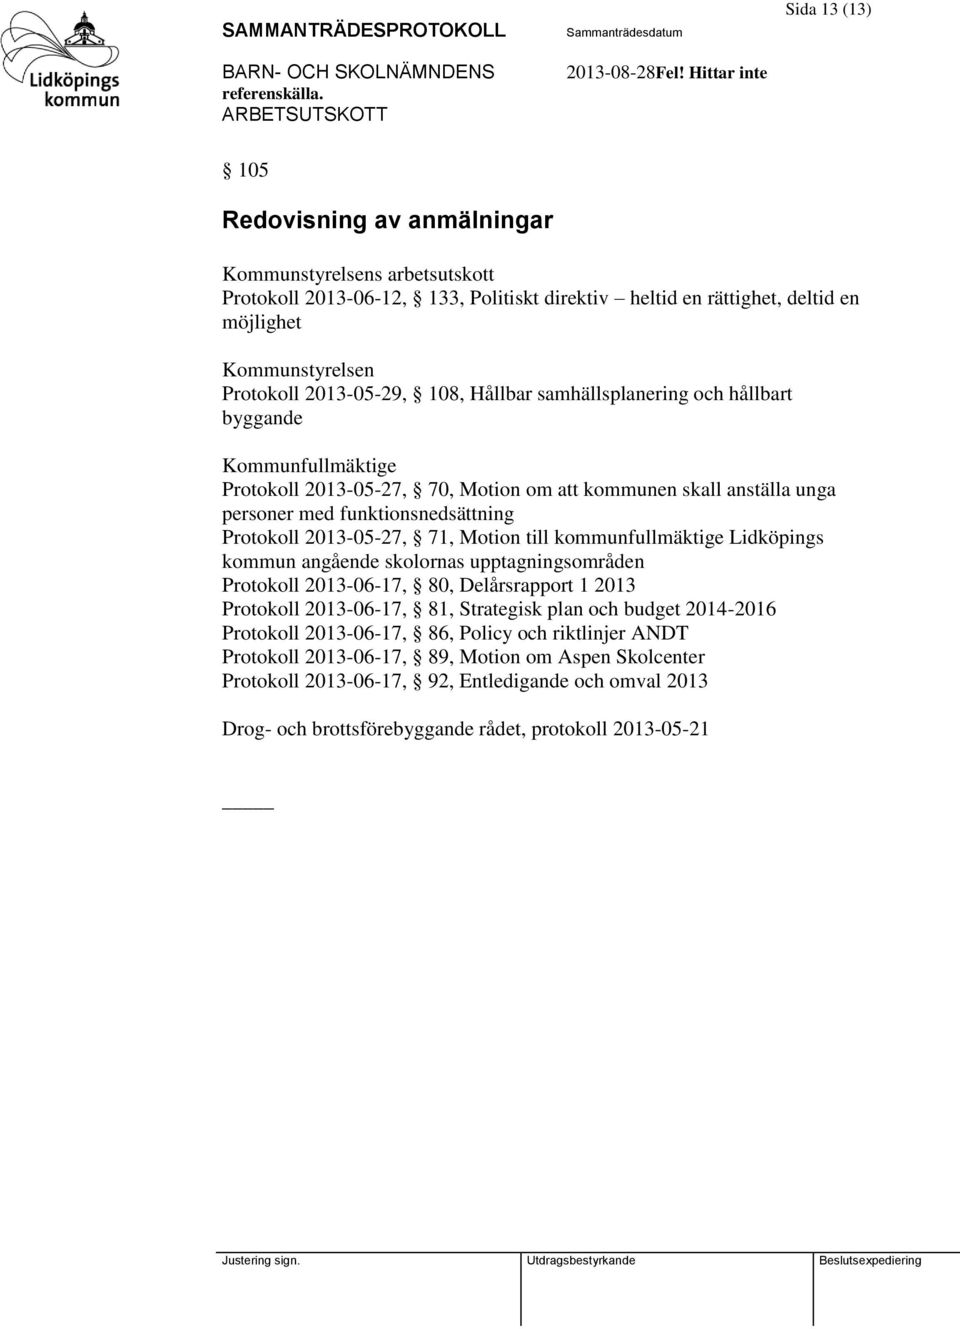 Motion till kommunfullmäktige Lidköpings kommun angående skolornas upptagningsområden Protokoll 2013-06-17, 80, Delårsrapport 1 2013 Protokoll 2013-06-17, 81, Strategisk plan och budget 2014-2016